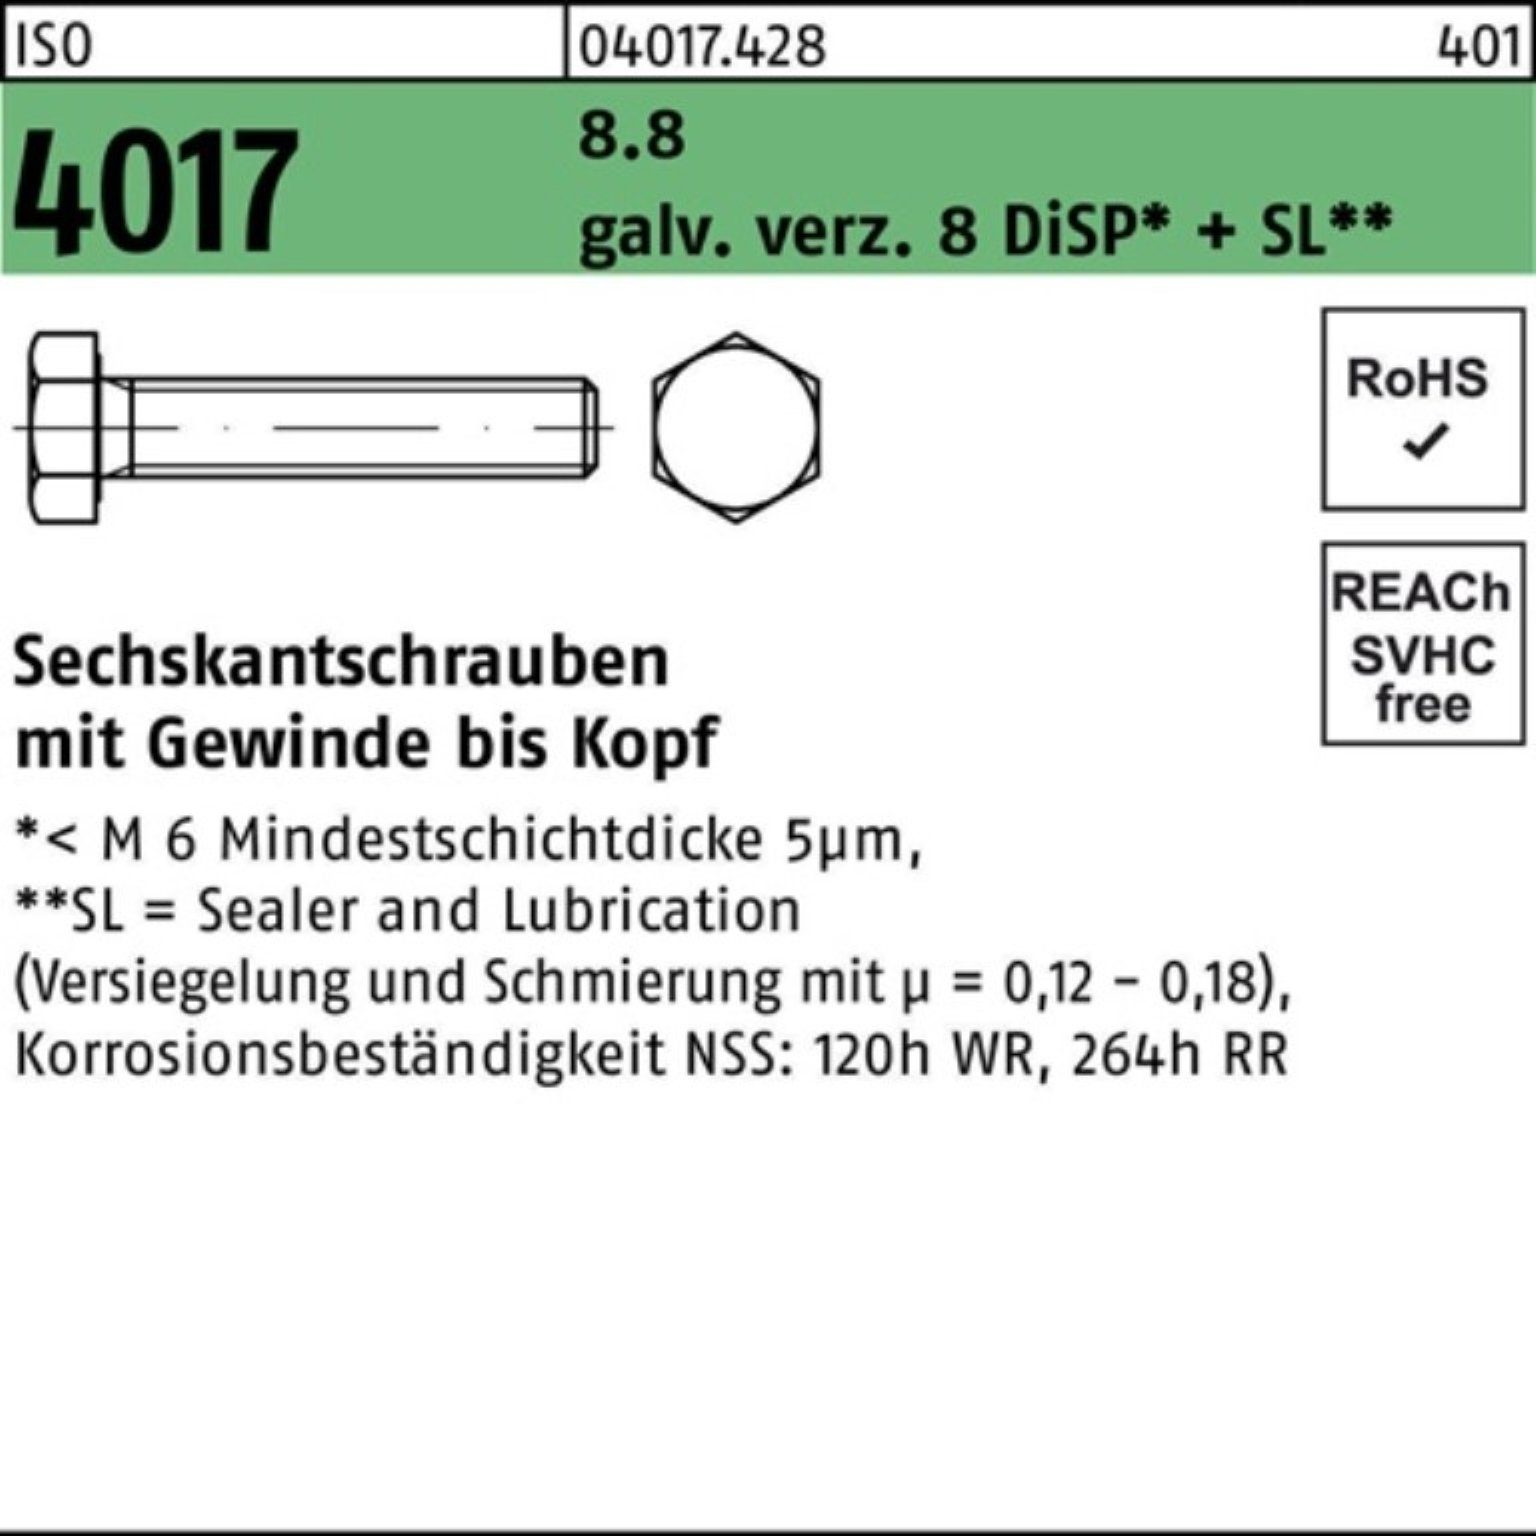 ISO 4017 VG DiSP 40 Sechskantschraube 100er Bufab 8.8 8 Sechskantschraube M20x Pack galv.verz.